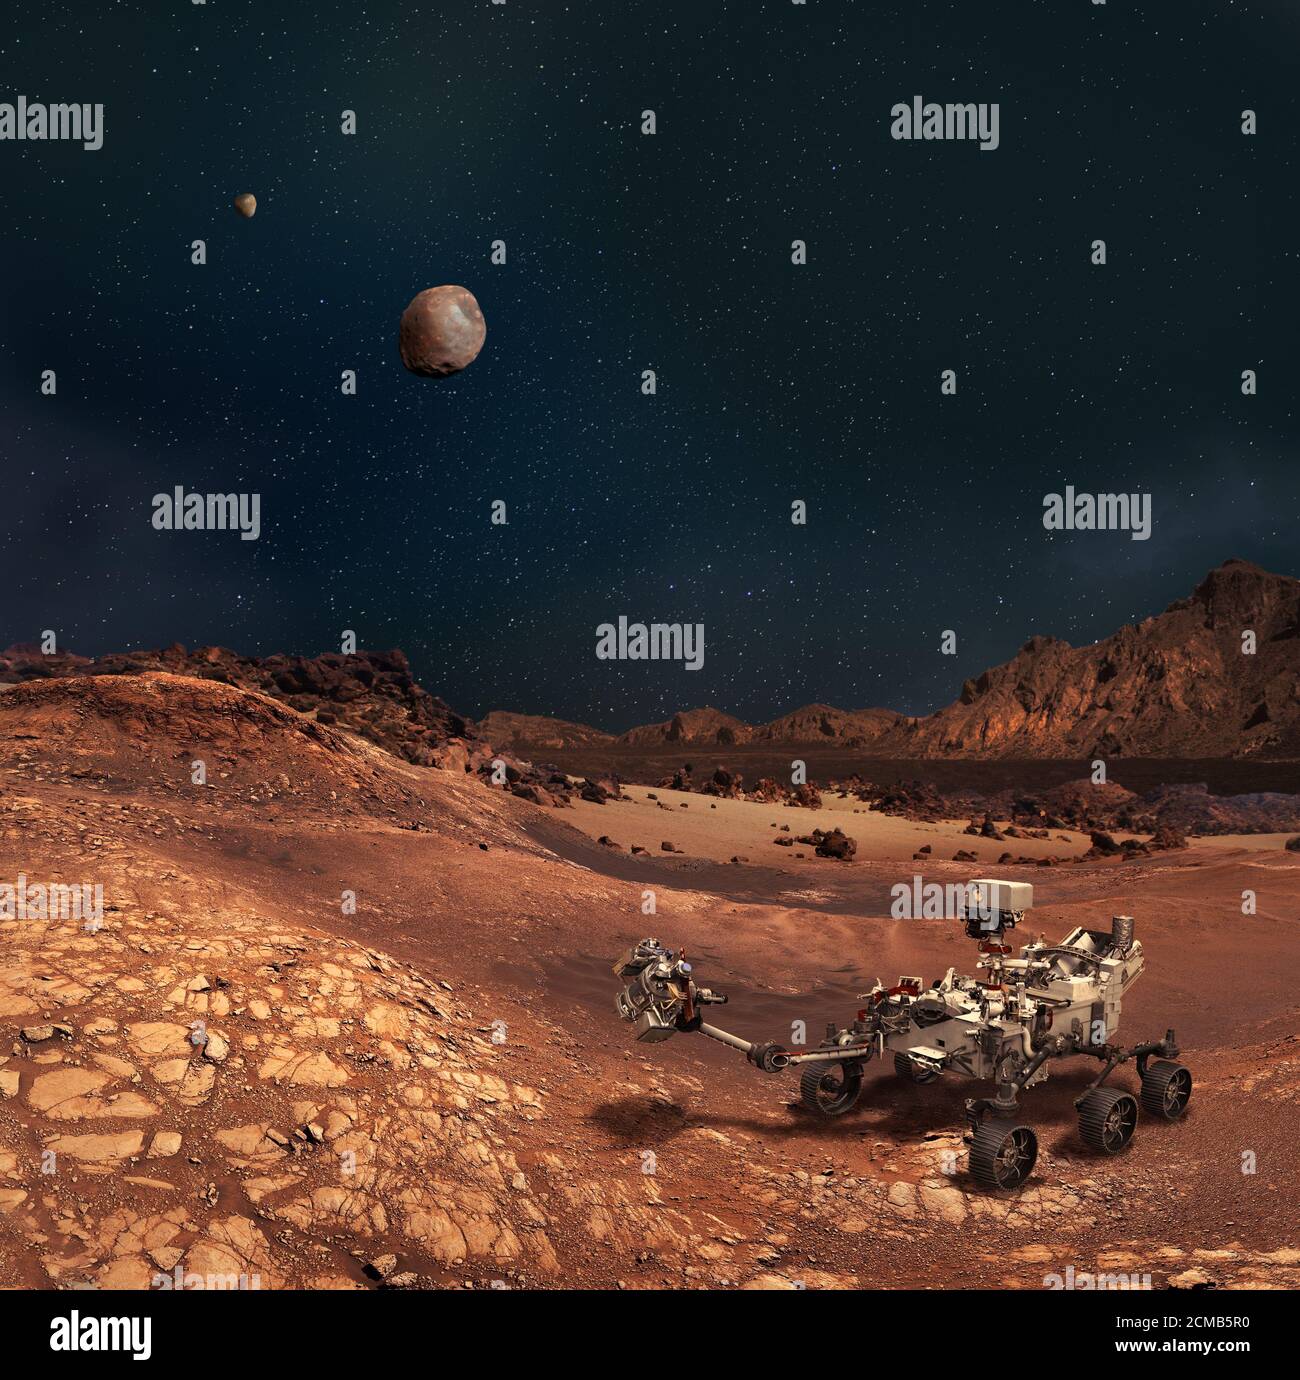 Illustrazione della perseveranza rover nel paesaggio roccioso del pianeta Marte. Lune Phobos e Deimos sul cielo. Alcuni elementi sono forniti dalla NASA. Foto Stock